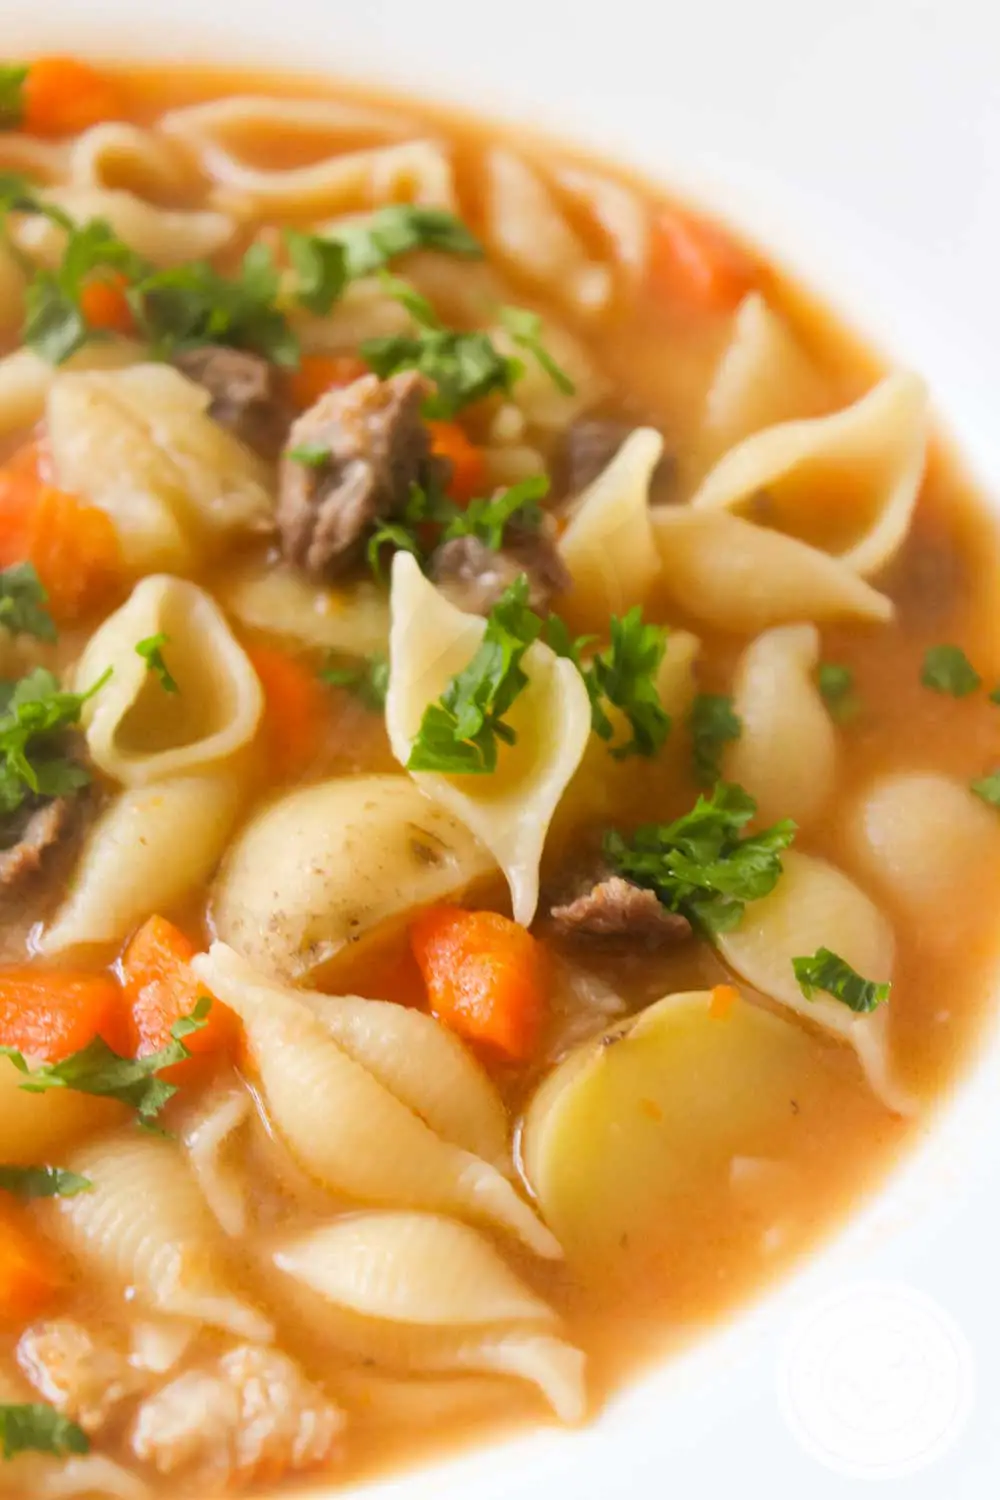 Receita de Sopa de Carne - compre aquela carne de segunda e faça uma sopa deliciosa para toda a família.